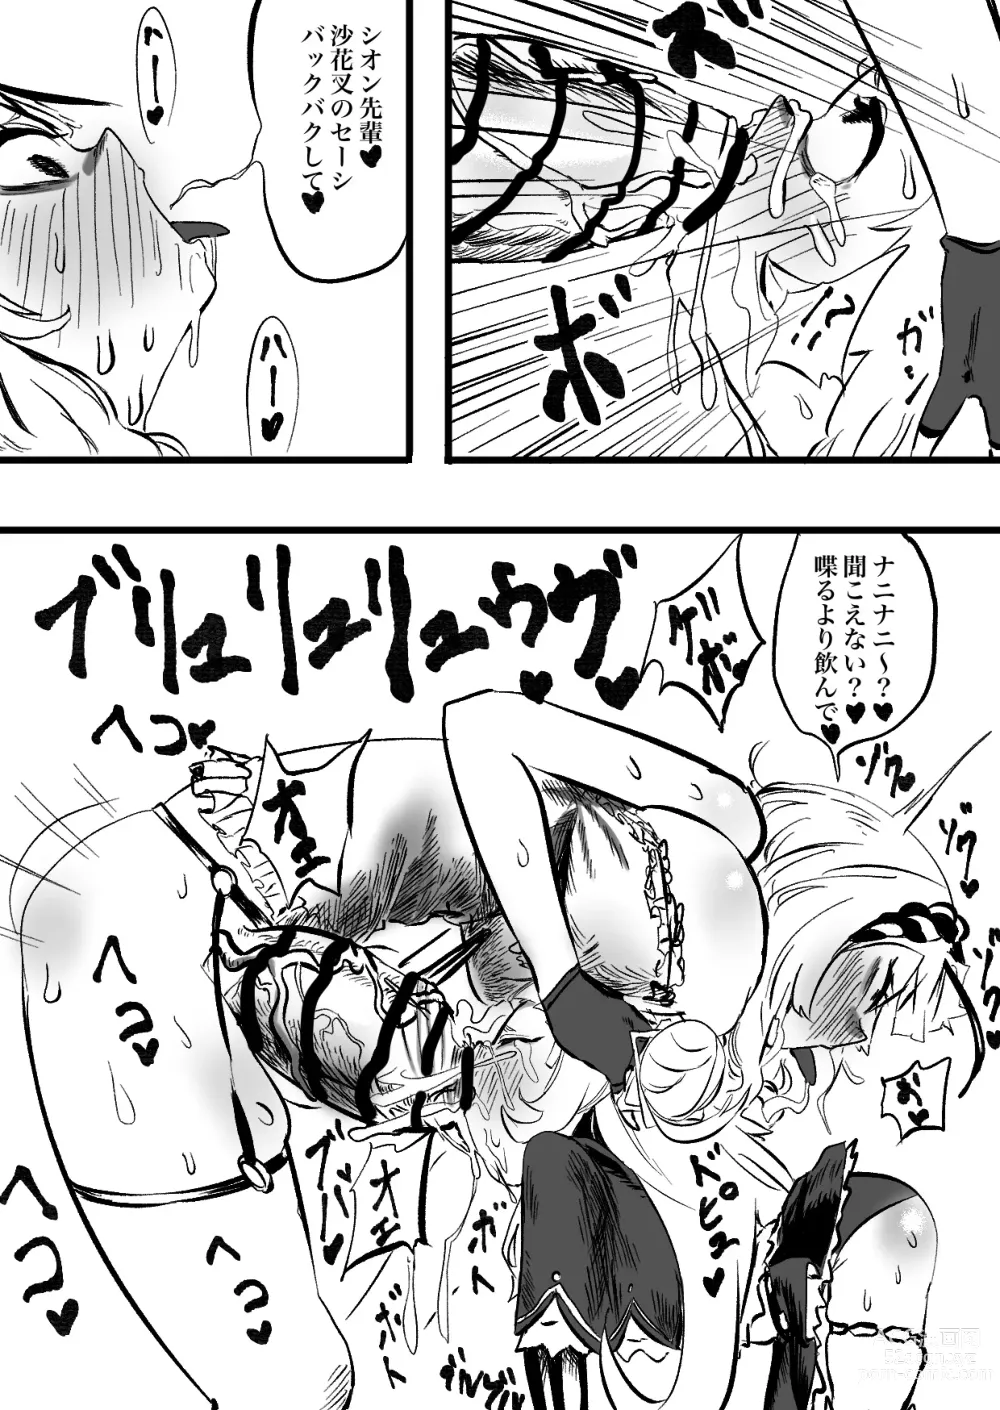 Page 11 of doujinshi KuroShio unde mirumiru fiiyu